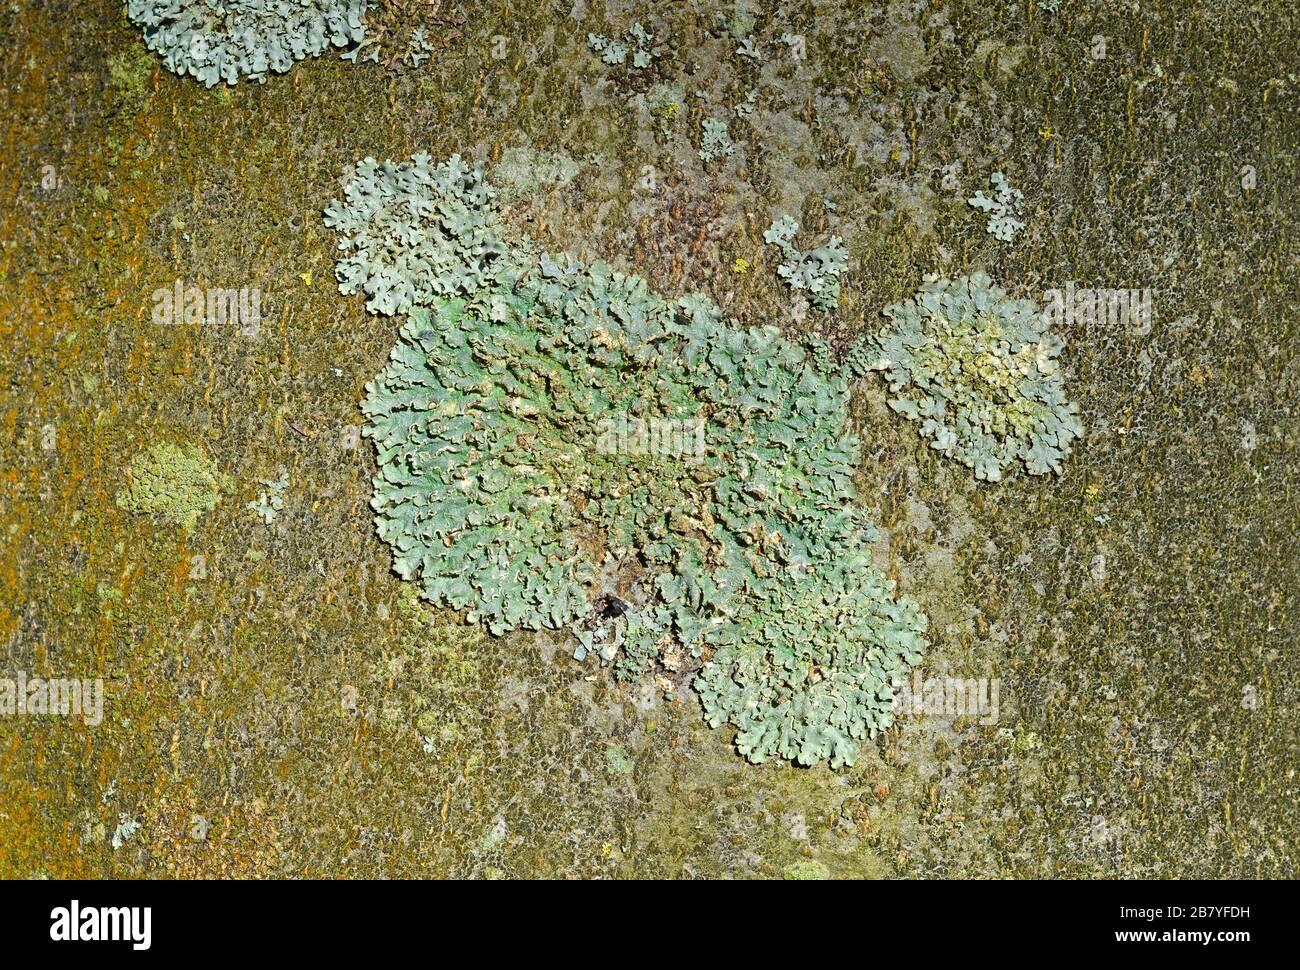 Greenshield lichen, Flavoparmelia caperata, on a tree trunk in Clifton, Bristol, UK Stock Photo